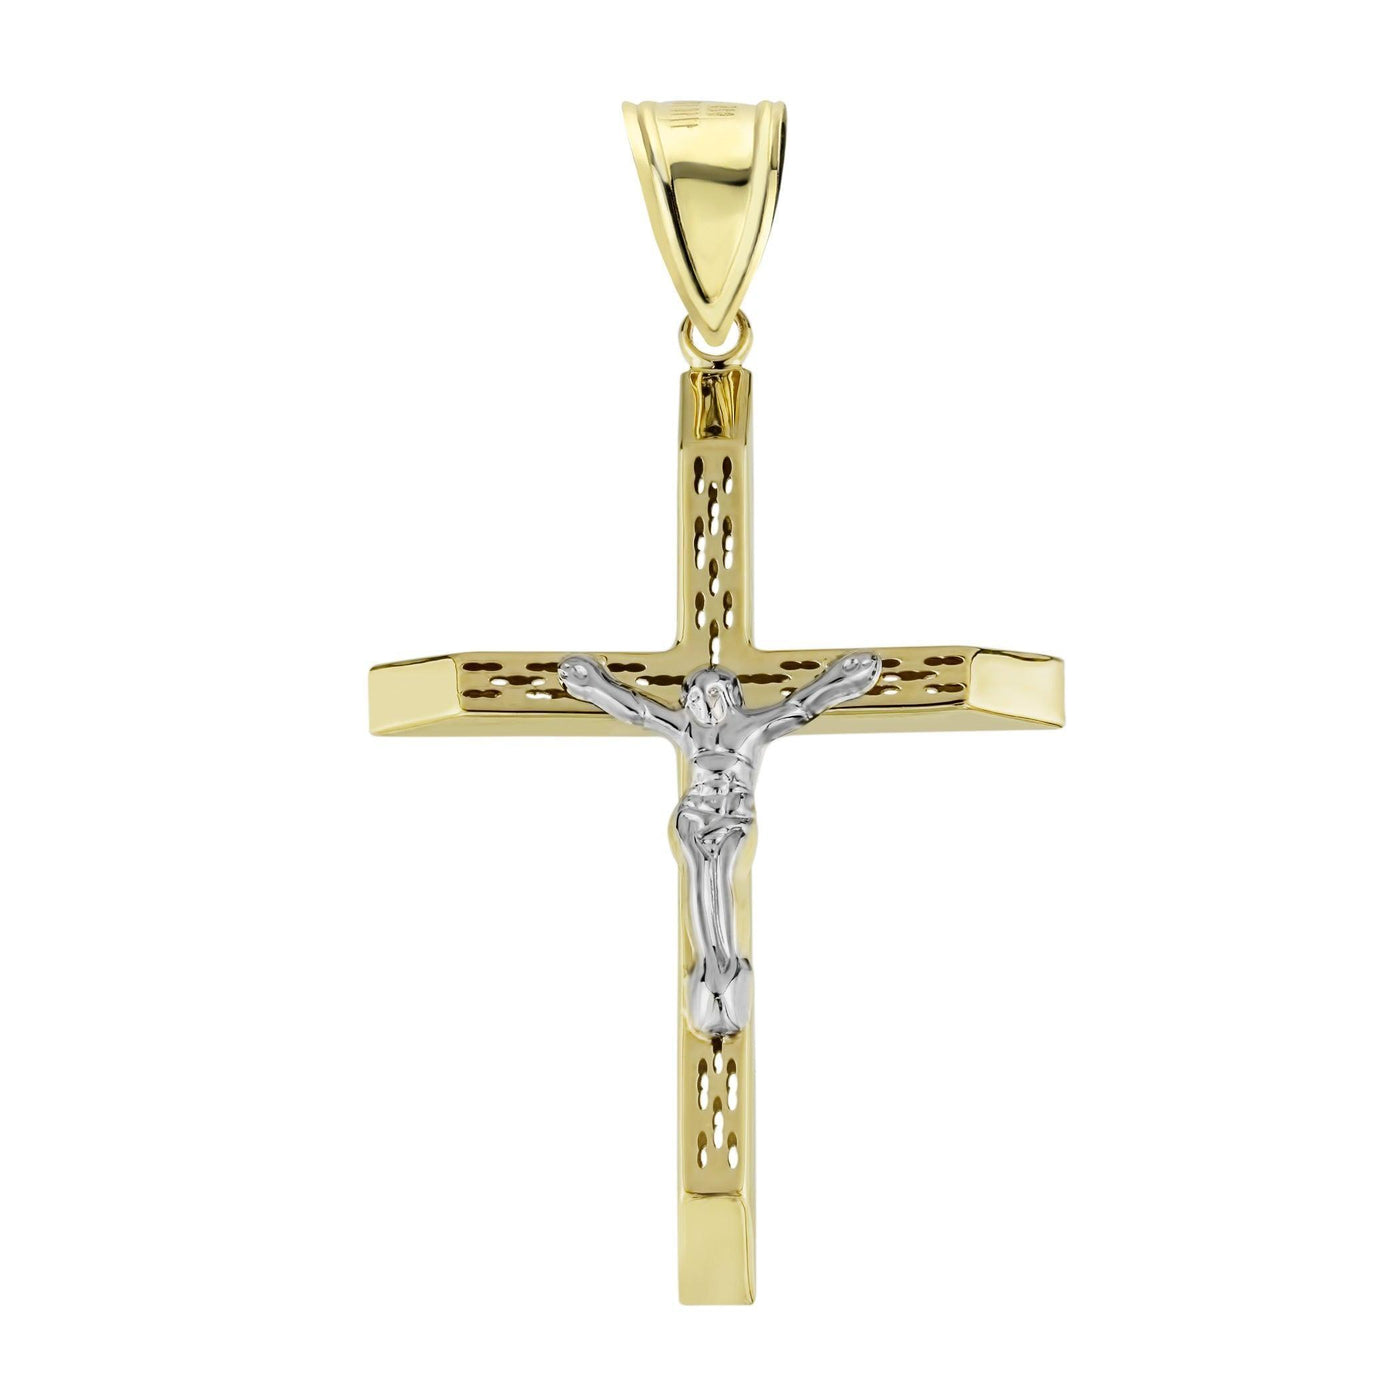 2.5" Huge Jesus Christ Crucifix Cross Pendant Charm 10K Yellow Gold - bayamjewelry